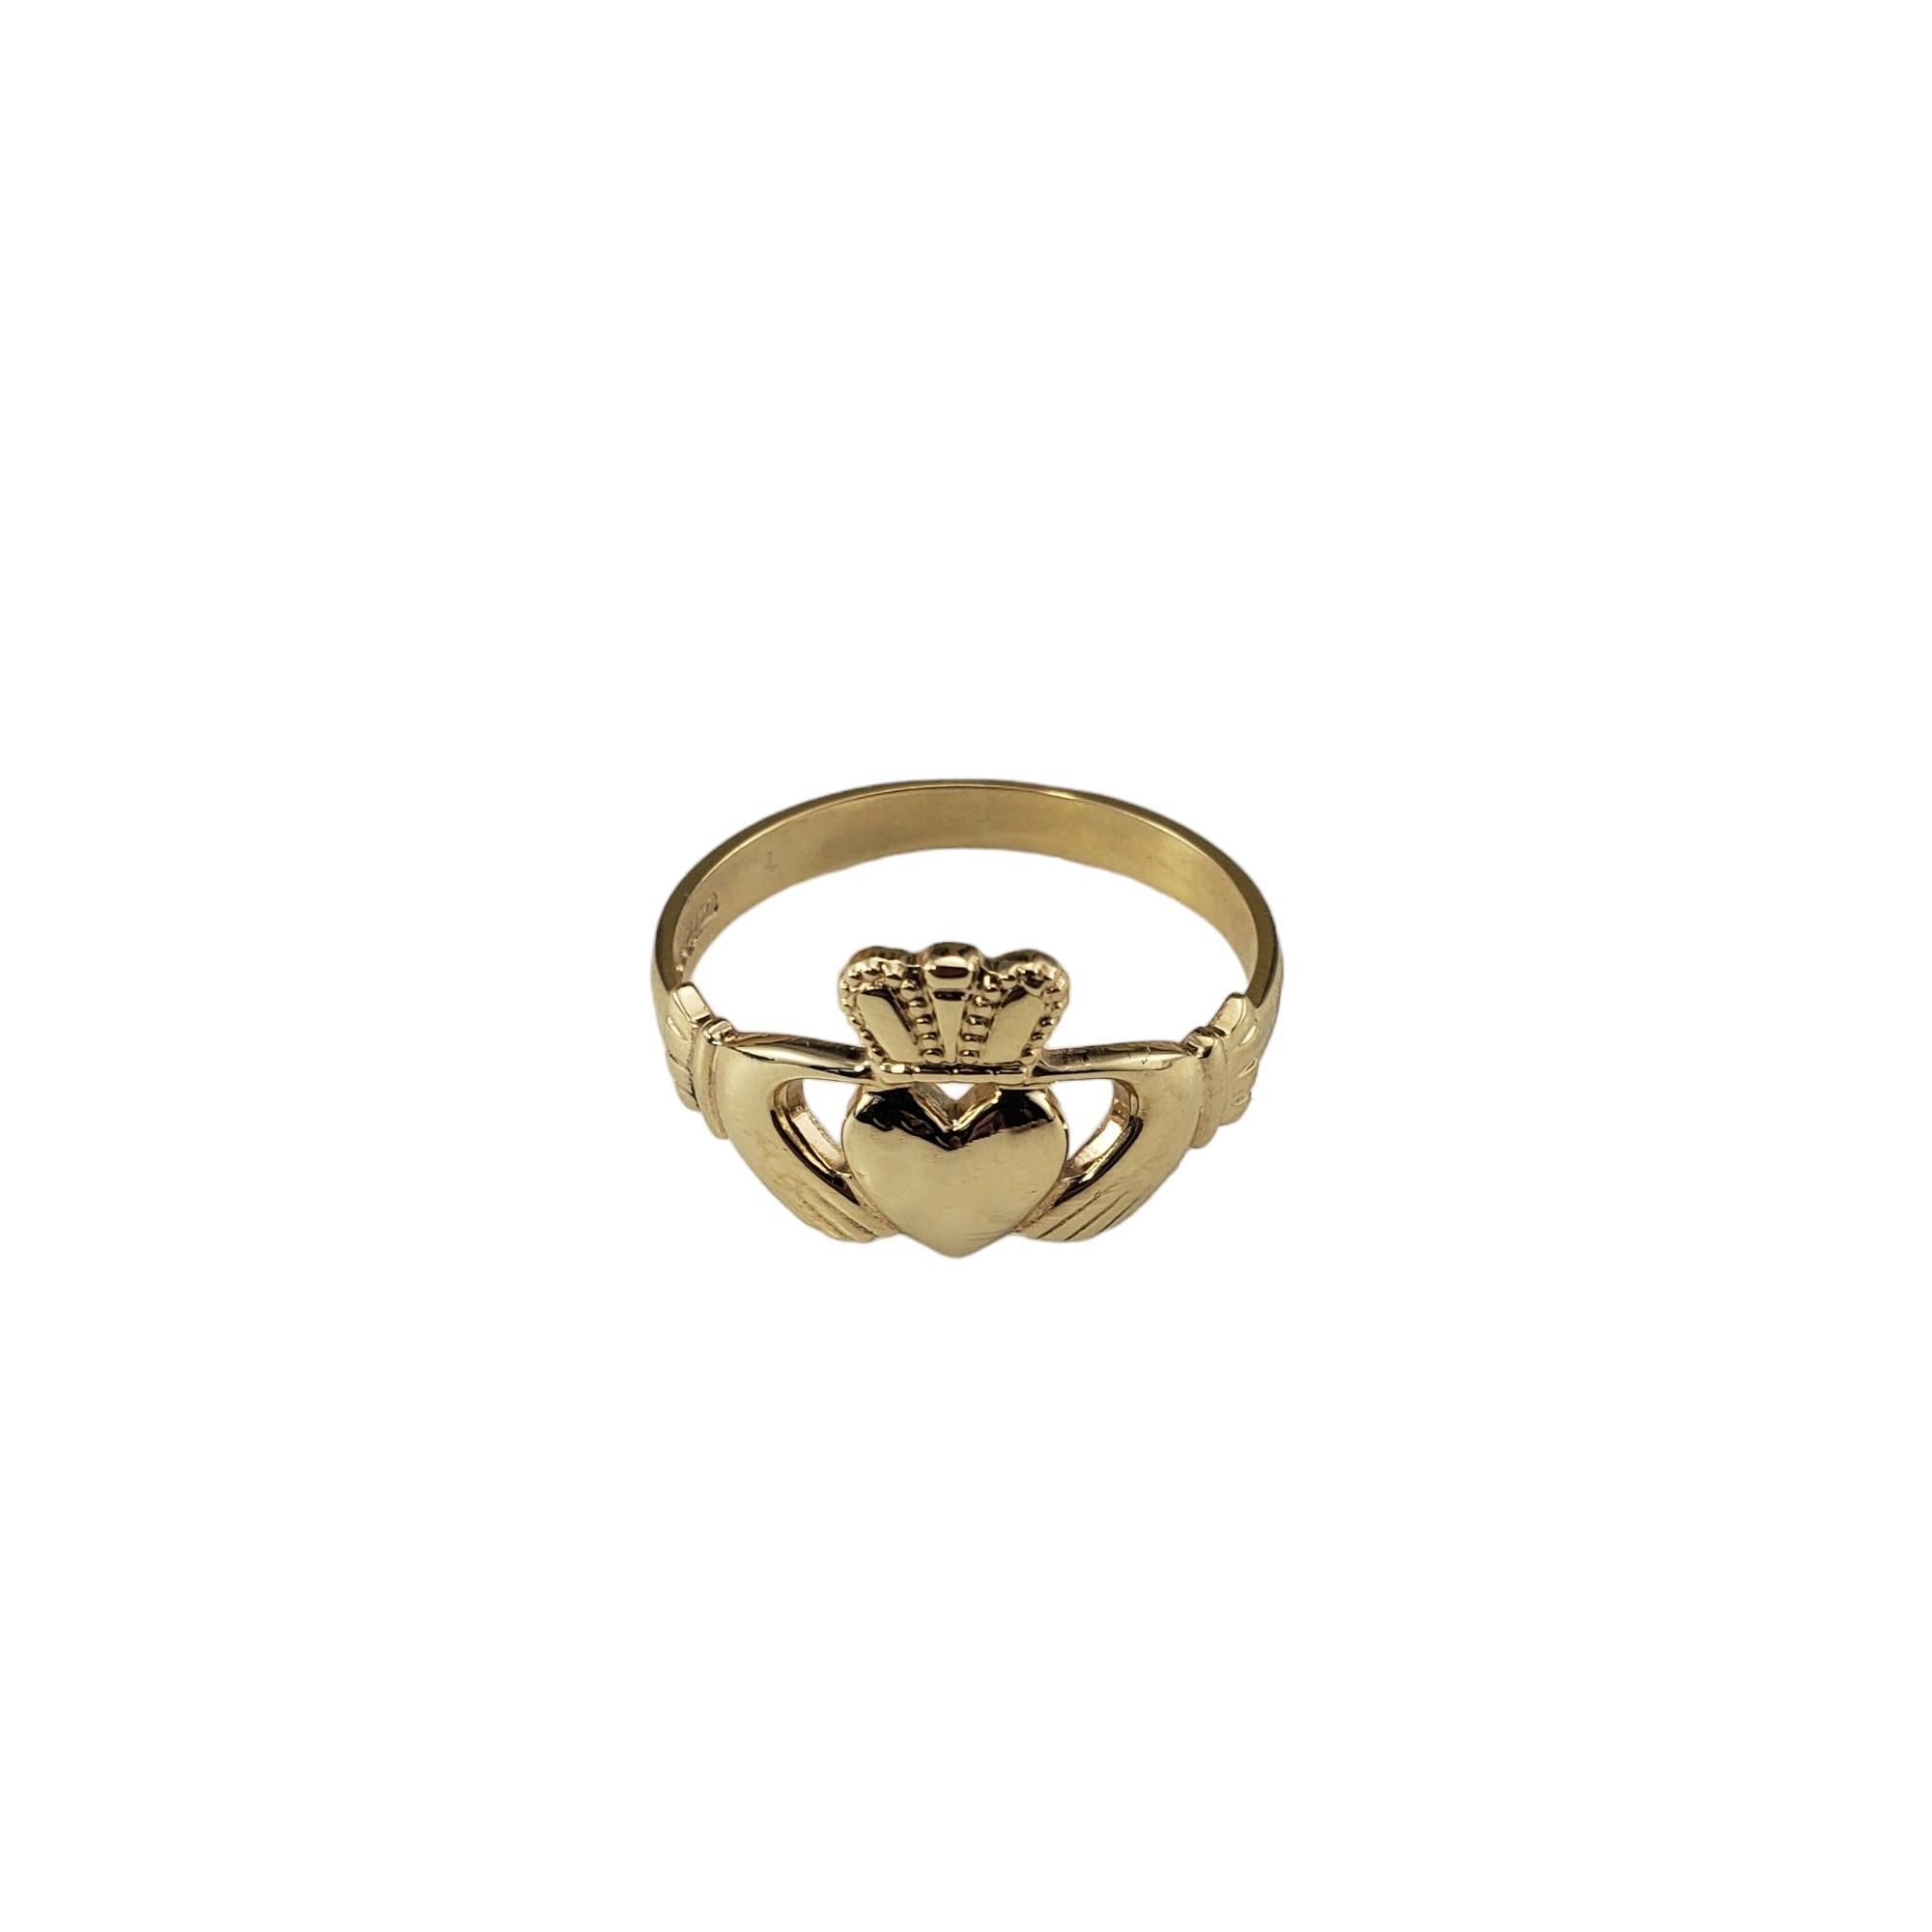 Herren 10 Karat Gelbgold Claddagh Ring Größe 12.75-13

Dieser elegante Claddagh-Ring für Männer ist aus wunderschönem 10-karätigem Gelbgold gefertigt. 

Breite: 22 mm.  
Schaft: 3 mm.

Größe:  12.75-13

Gestempelt: Hergestellt in Irland  JC  10